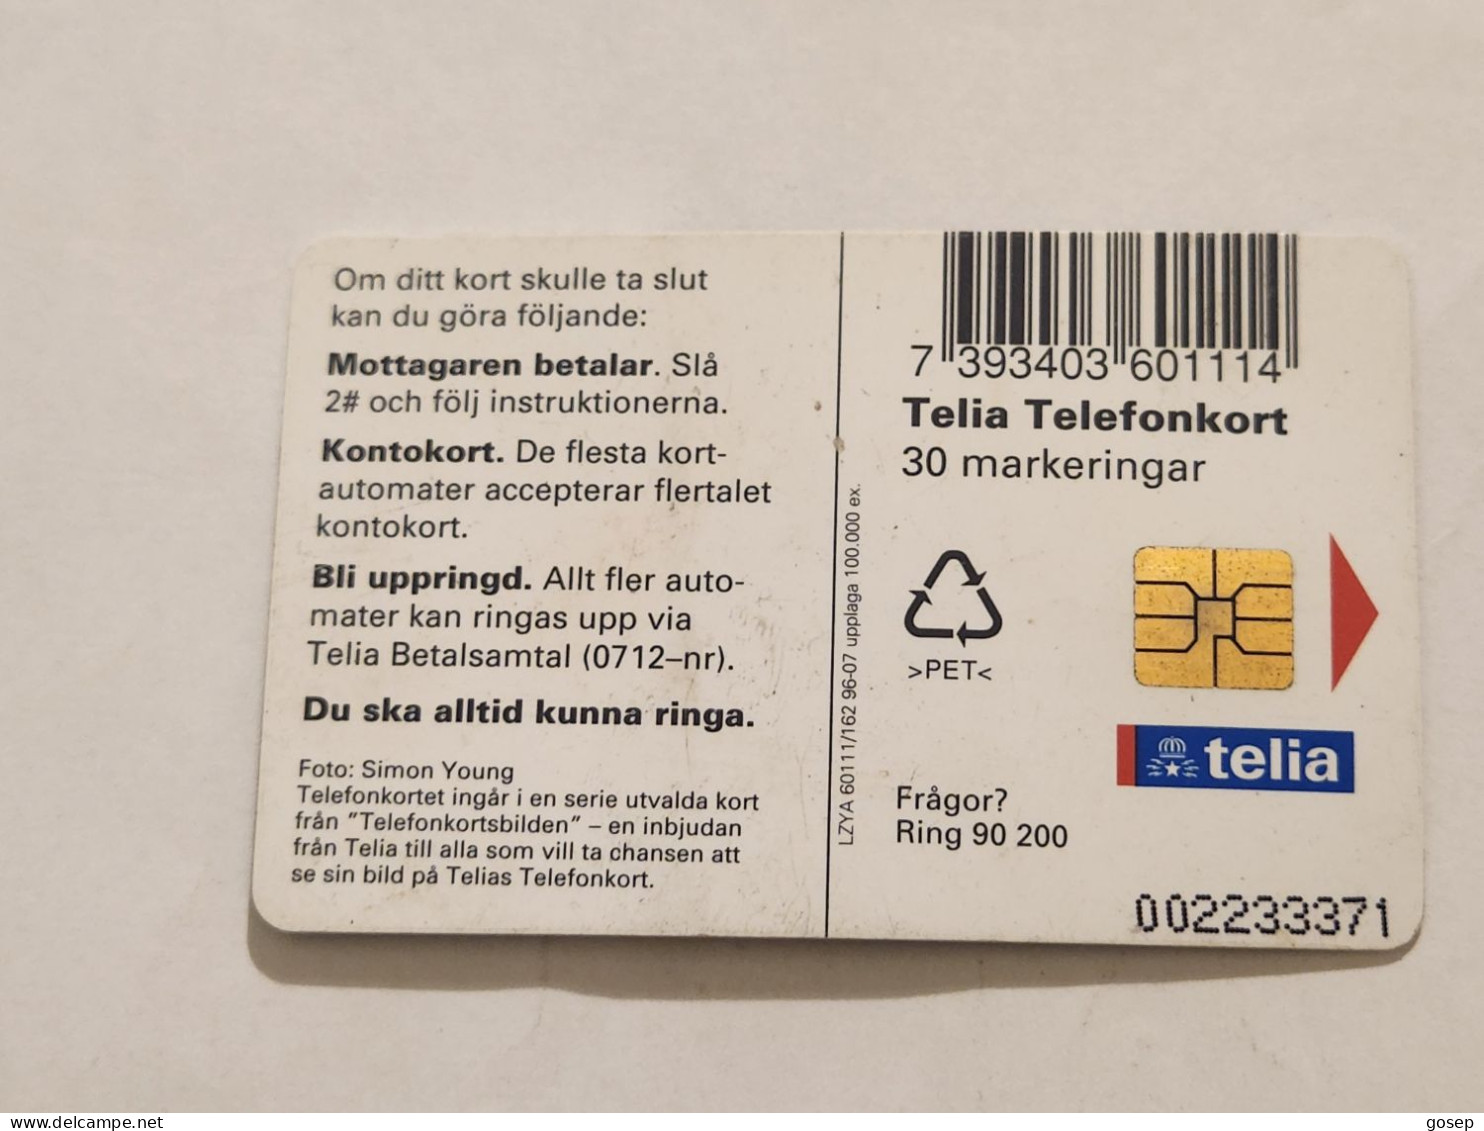 SWEDEN-(SE-TEL-030-0162)-Sunset-Landscape-(18)(Telefonkort 30)(tirage-100.000)(002233371)-used Card+1card Prepiad Free - Suède